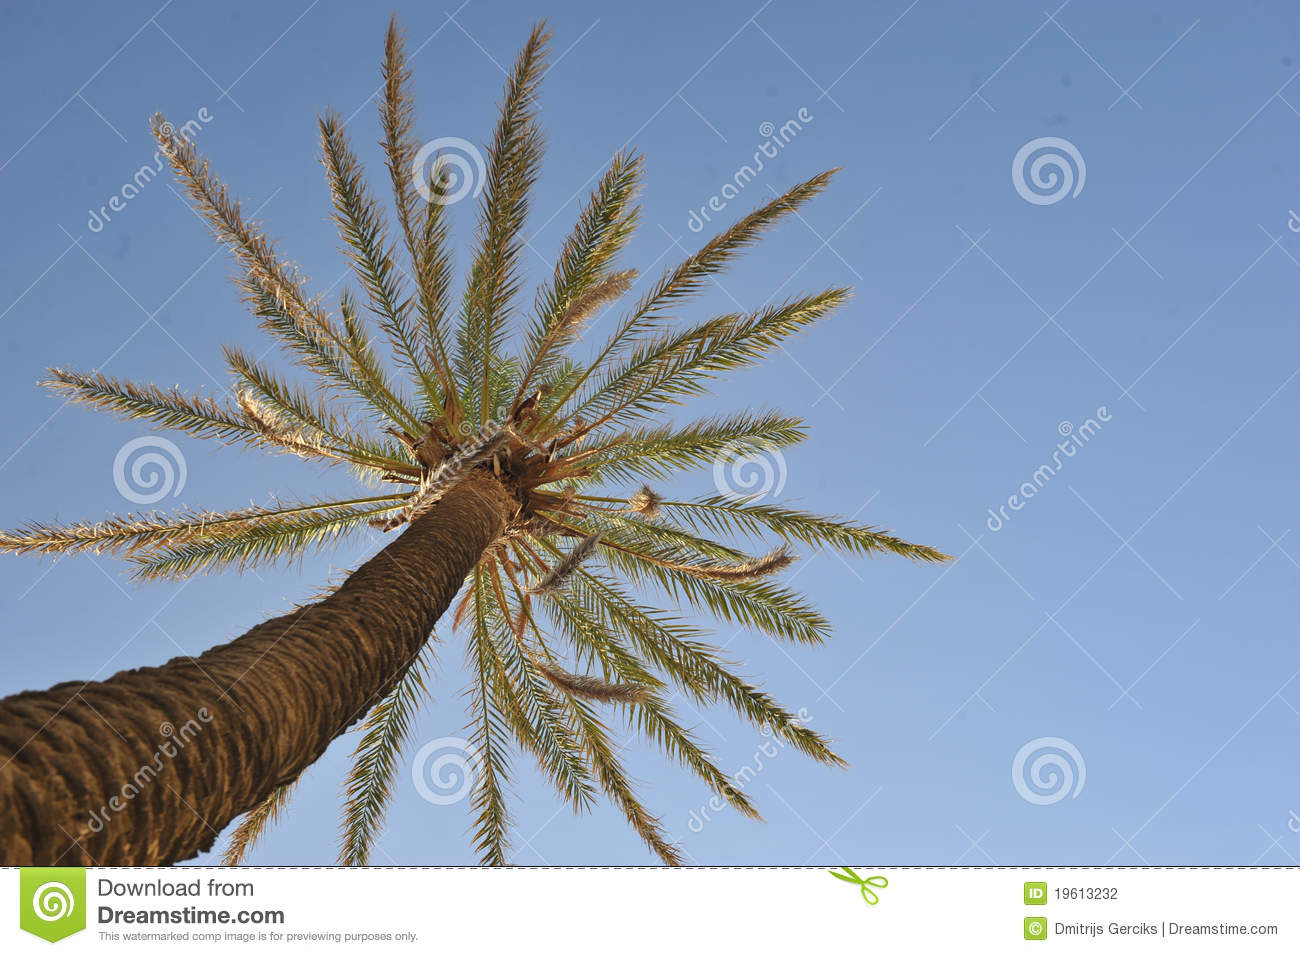   definition wallpapercomphotobeautiful palm tree wallpaper31html